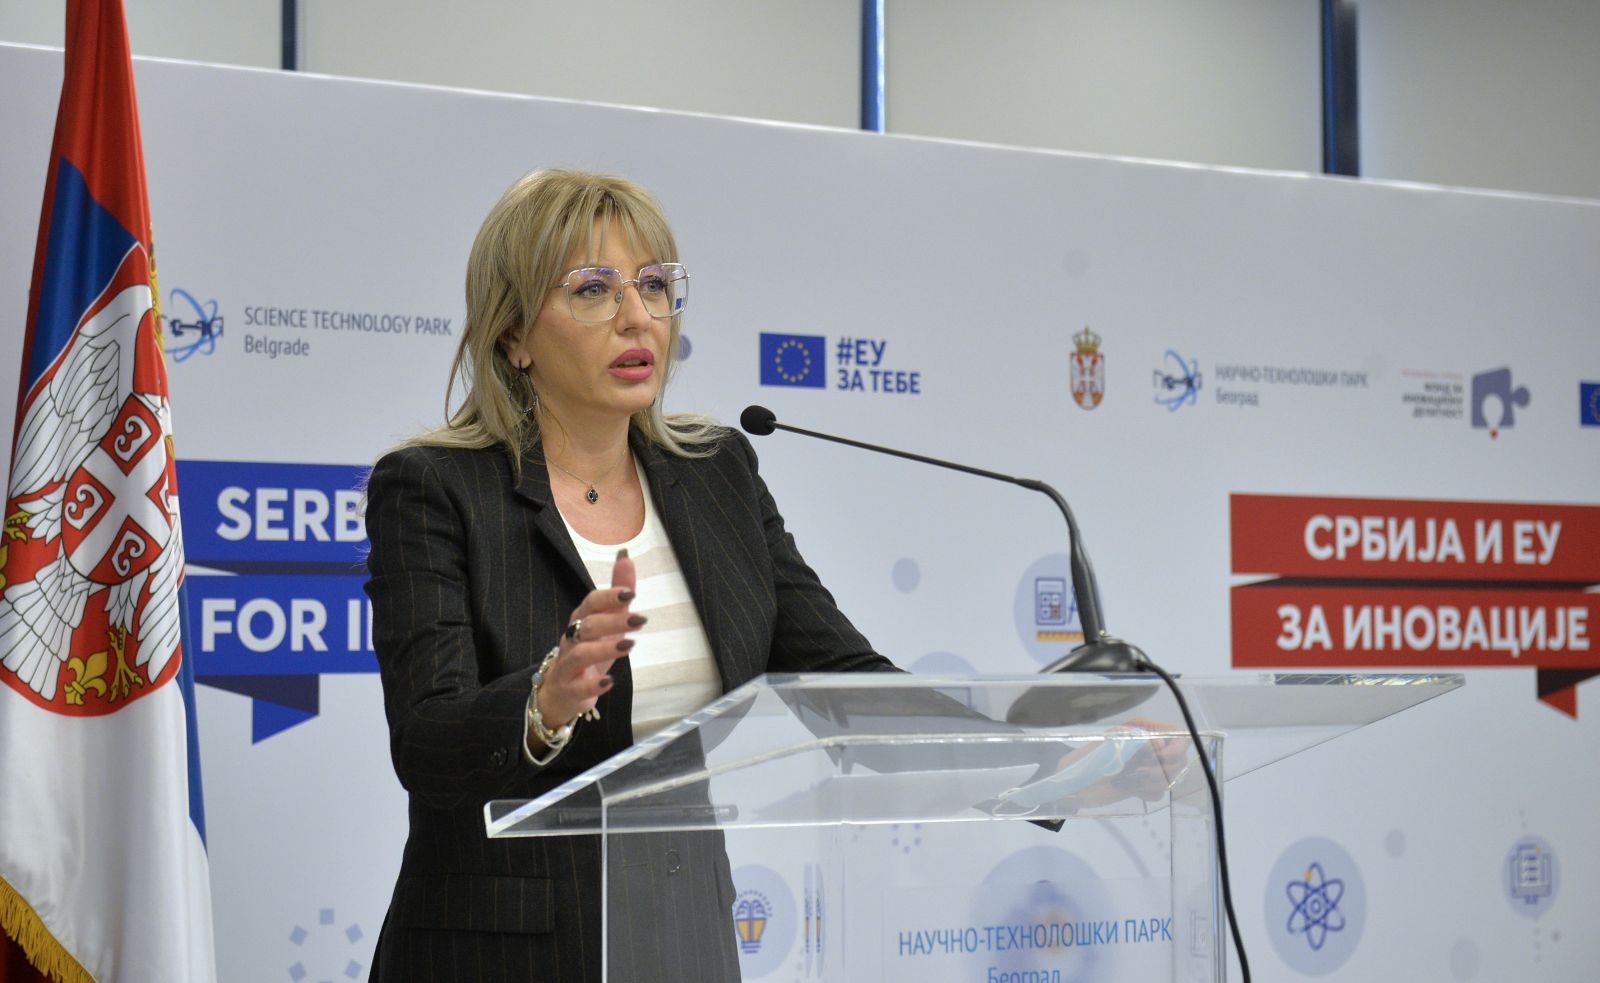 J. Joksimović: Increasing competitiveness of Serbia and EU through innovation